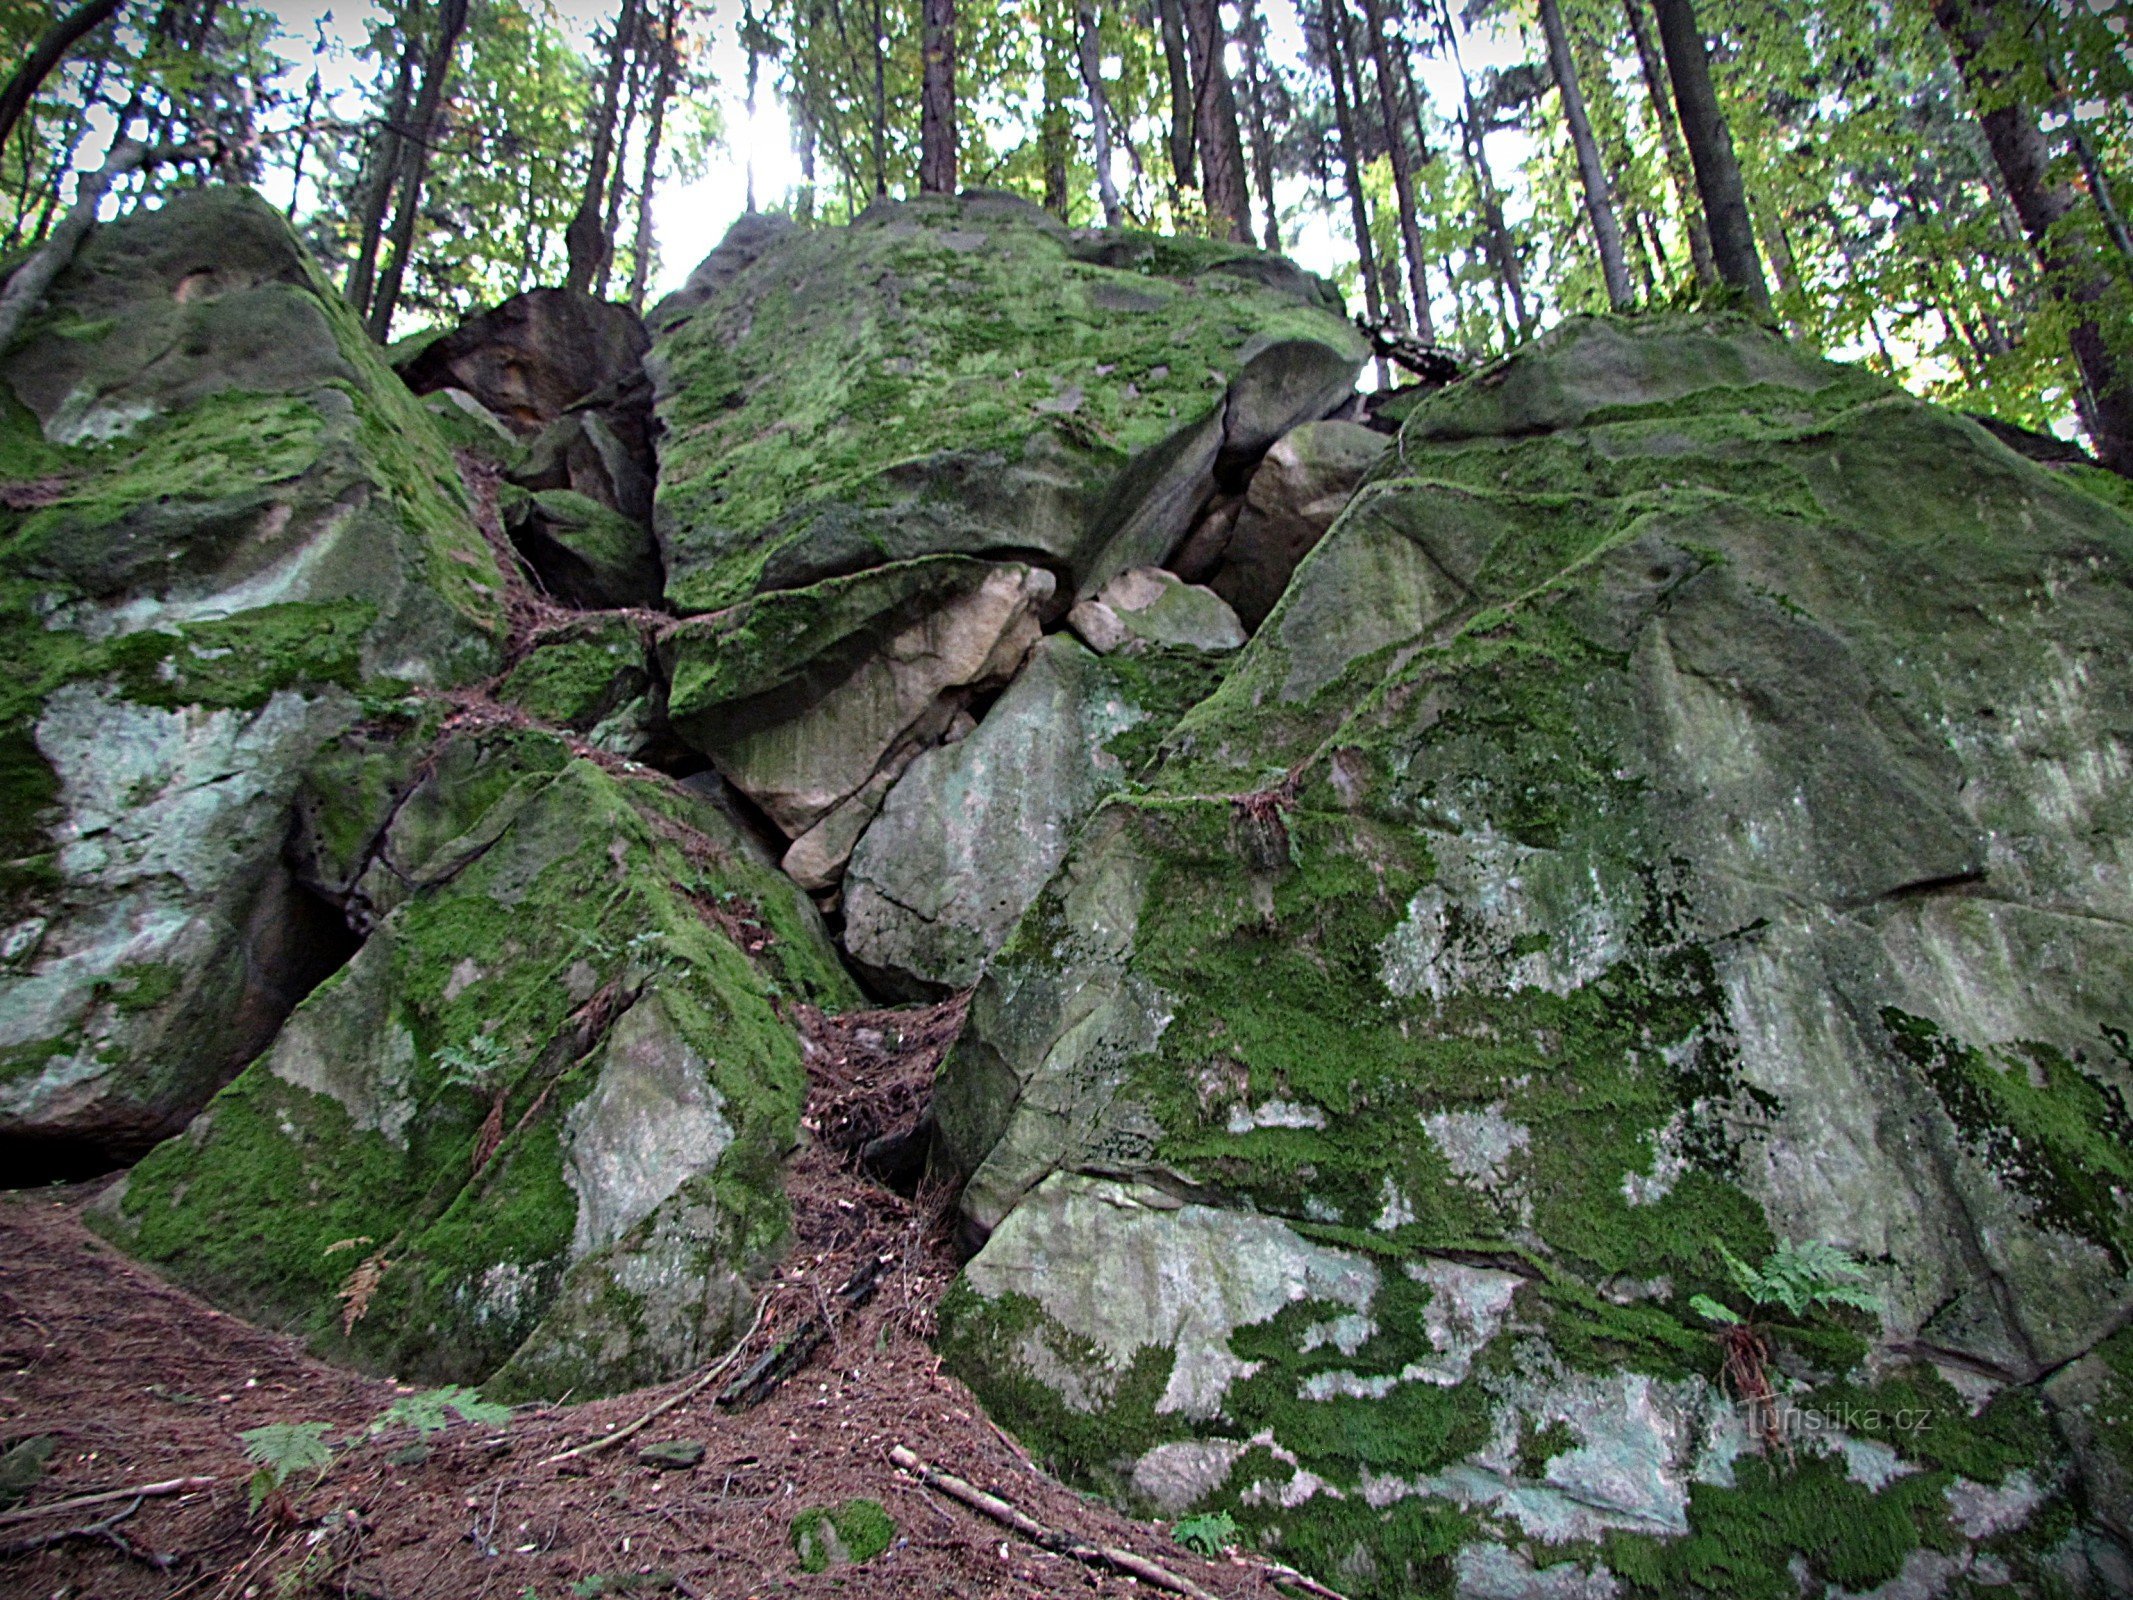 Držková - Rocky ridge west of the Holík reserve